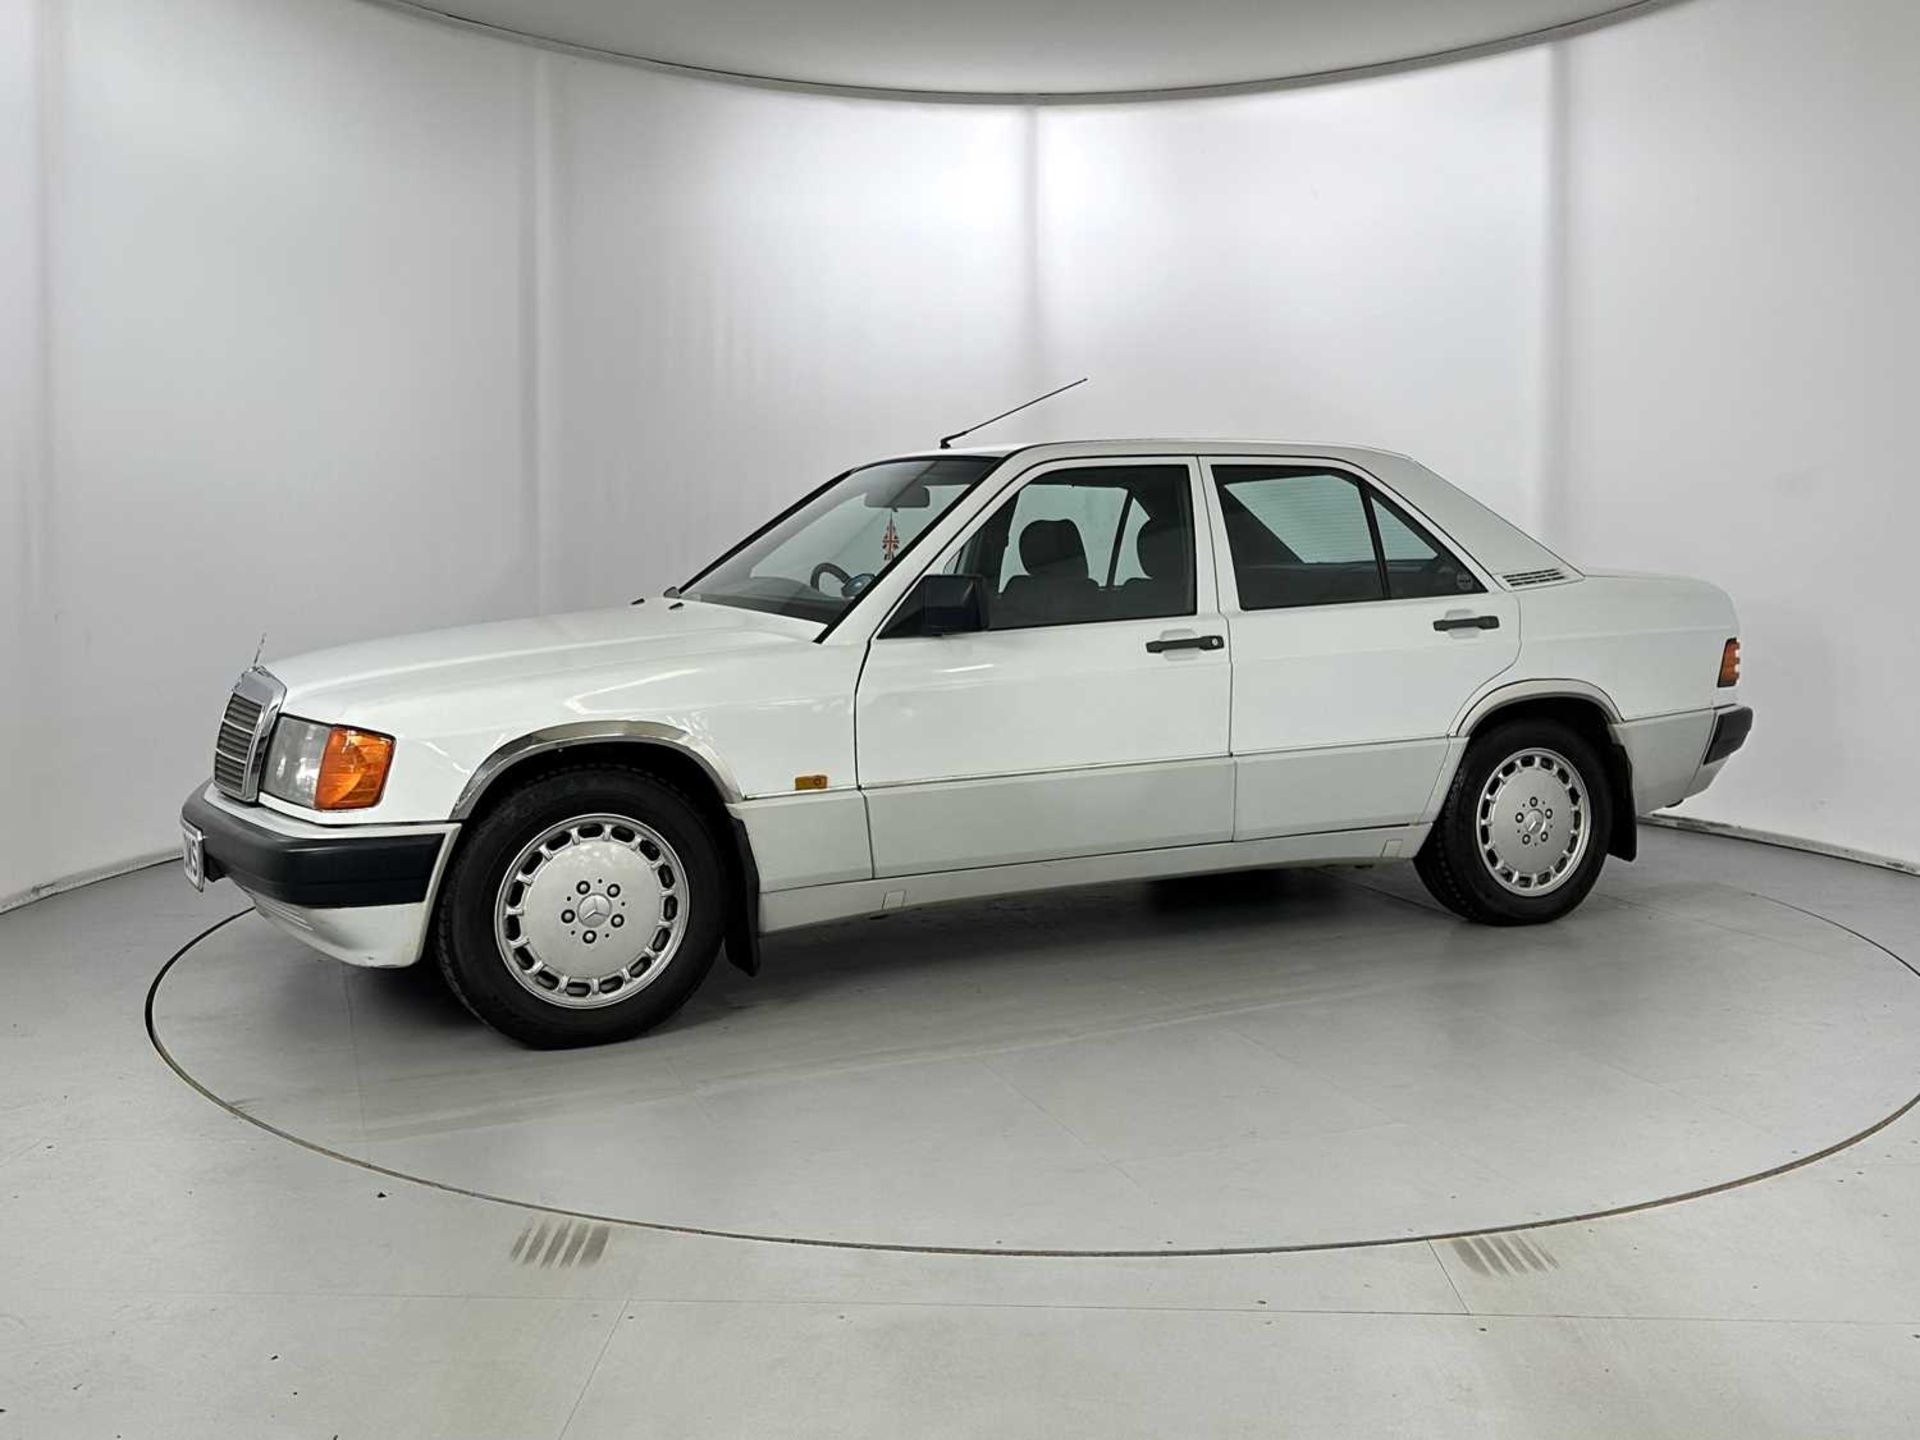 1989 Mercedes-Benz 190E - Image 4 of 34